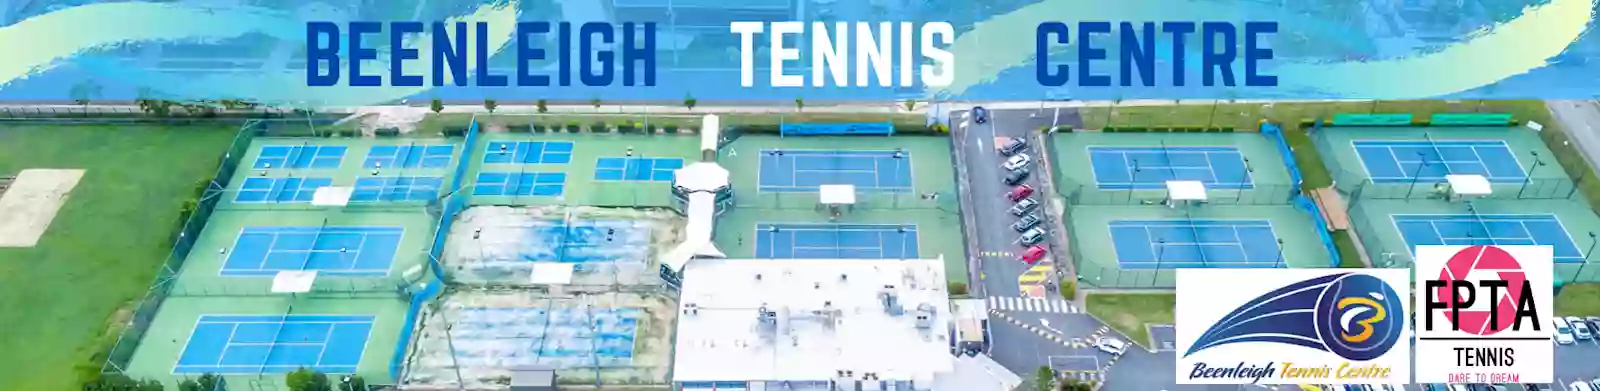 Beenleigh Tennis Centre